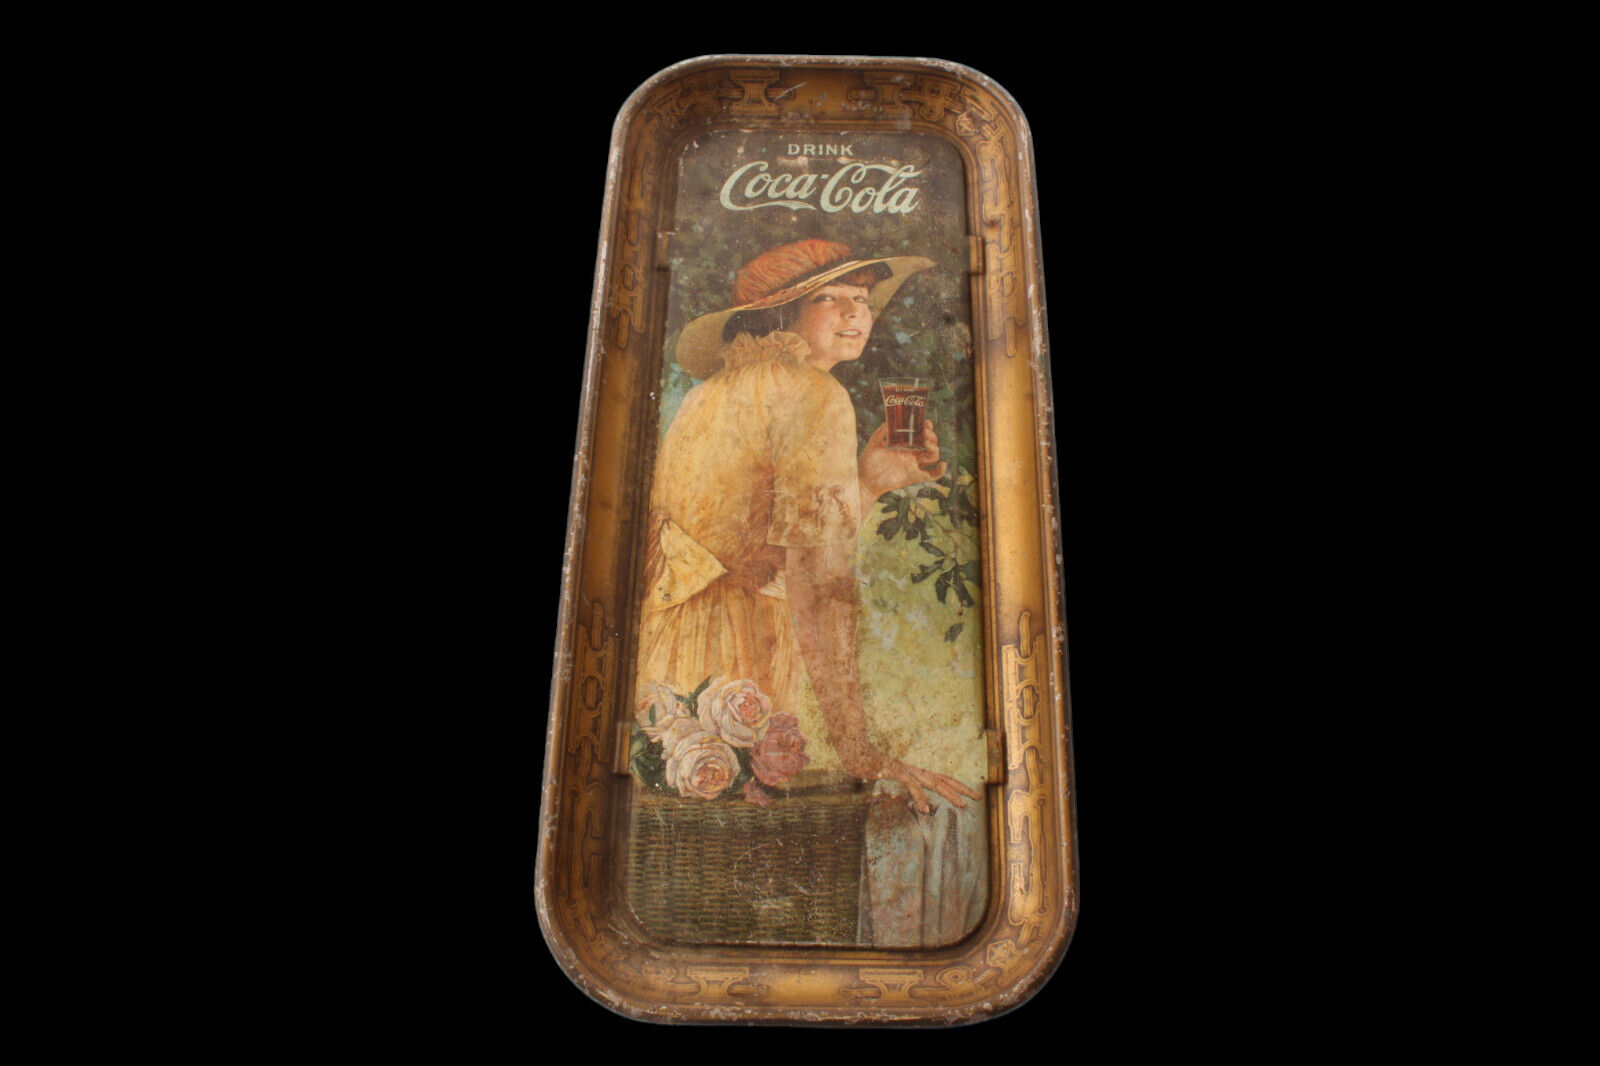 Original Antique 1916 Elaine Coca Cola Soda Pop Serving Tray